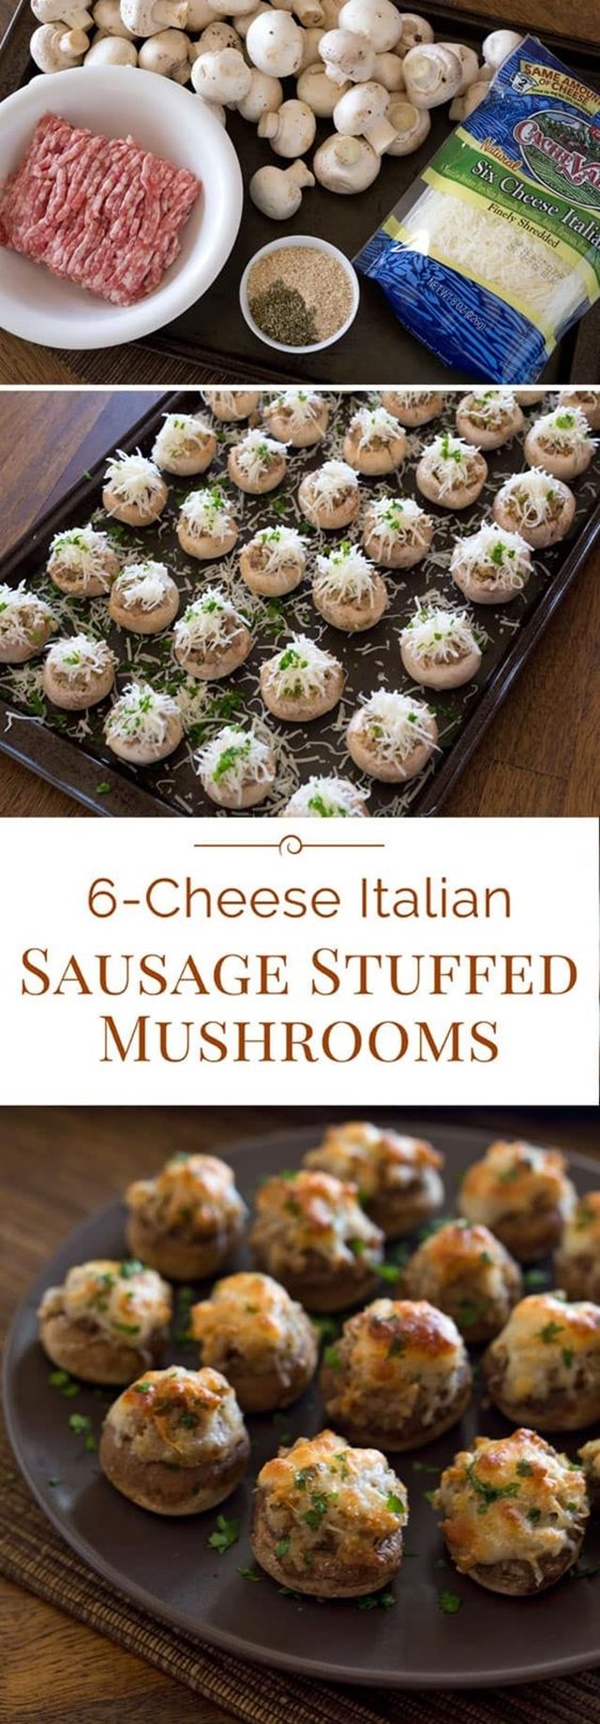 Authentic Italian Food Recipes 2019